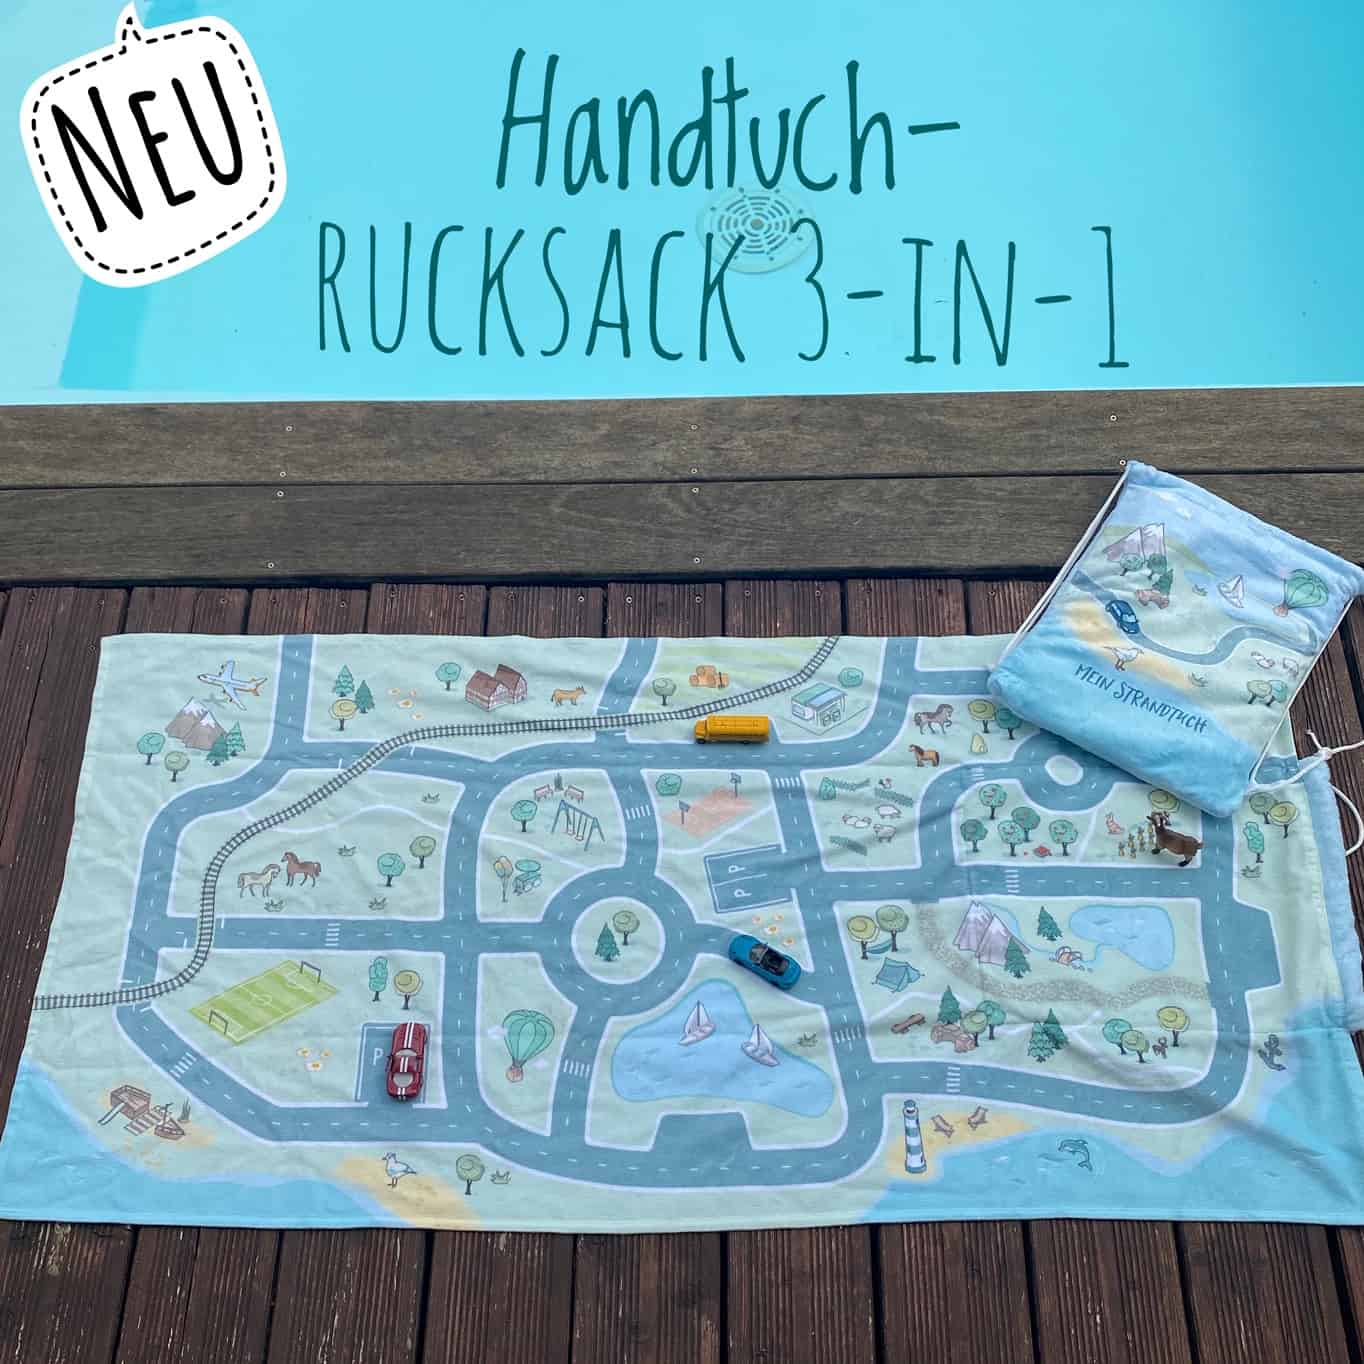 Handtuch-Rucksack 3-in-1